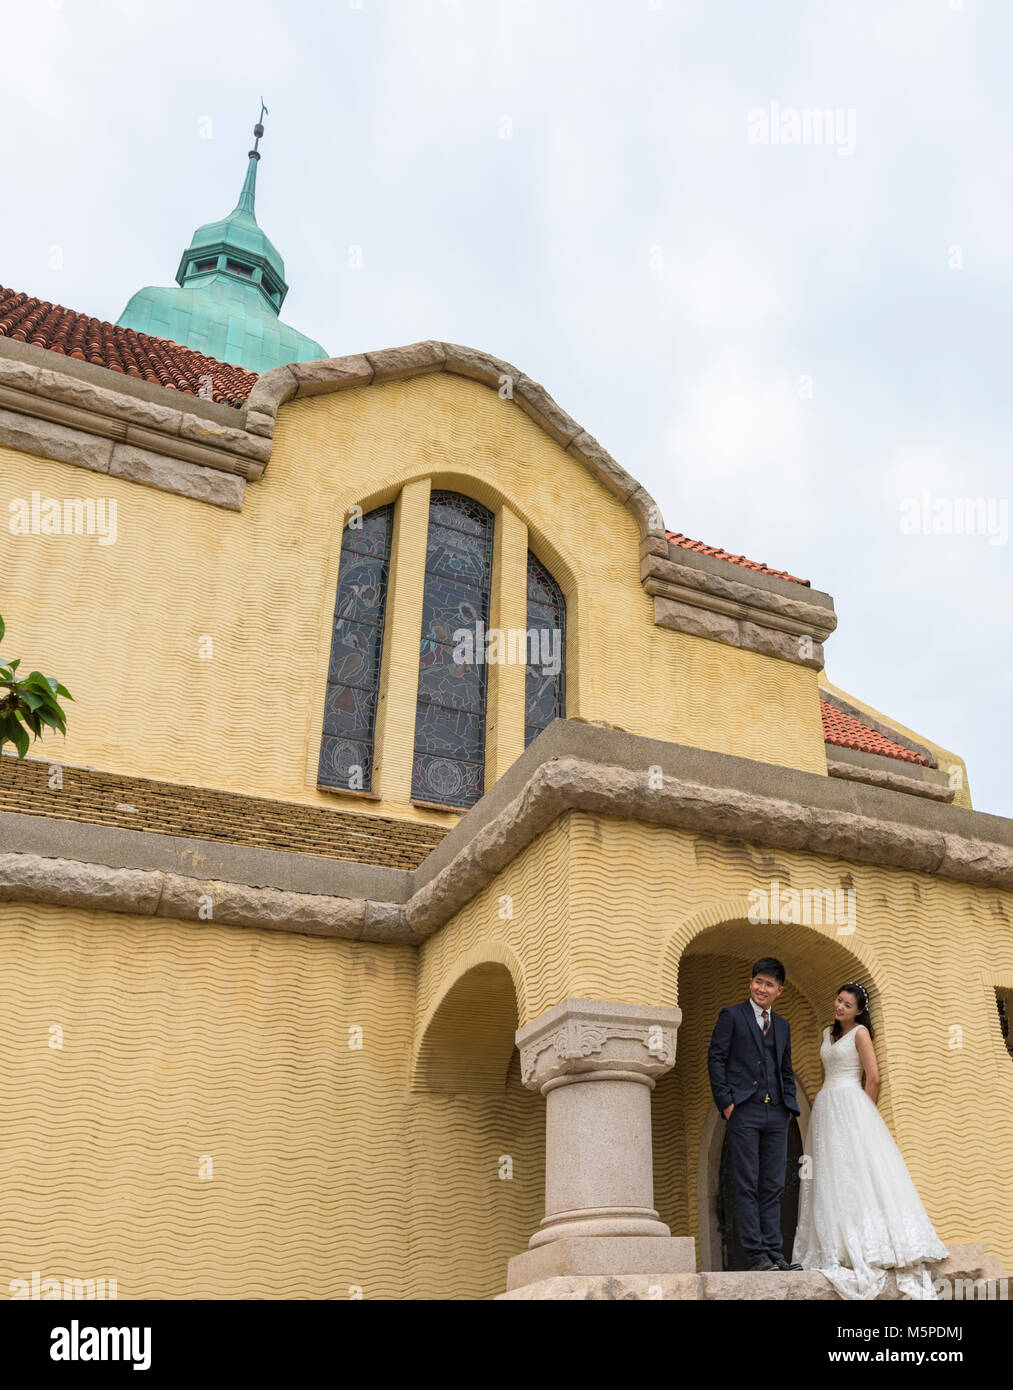 Paare, die Herde zu Qingdao evangelische Kirche zu haben, ihre Hochzeit zu fotografieren. Es ist eine der berühmten Kirchen von den Deutschen gebaut. Stockfoto